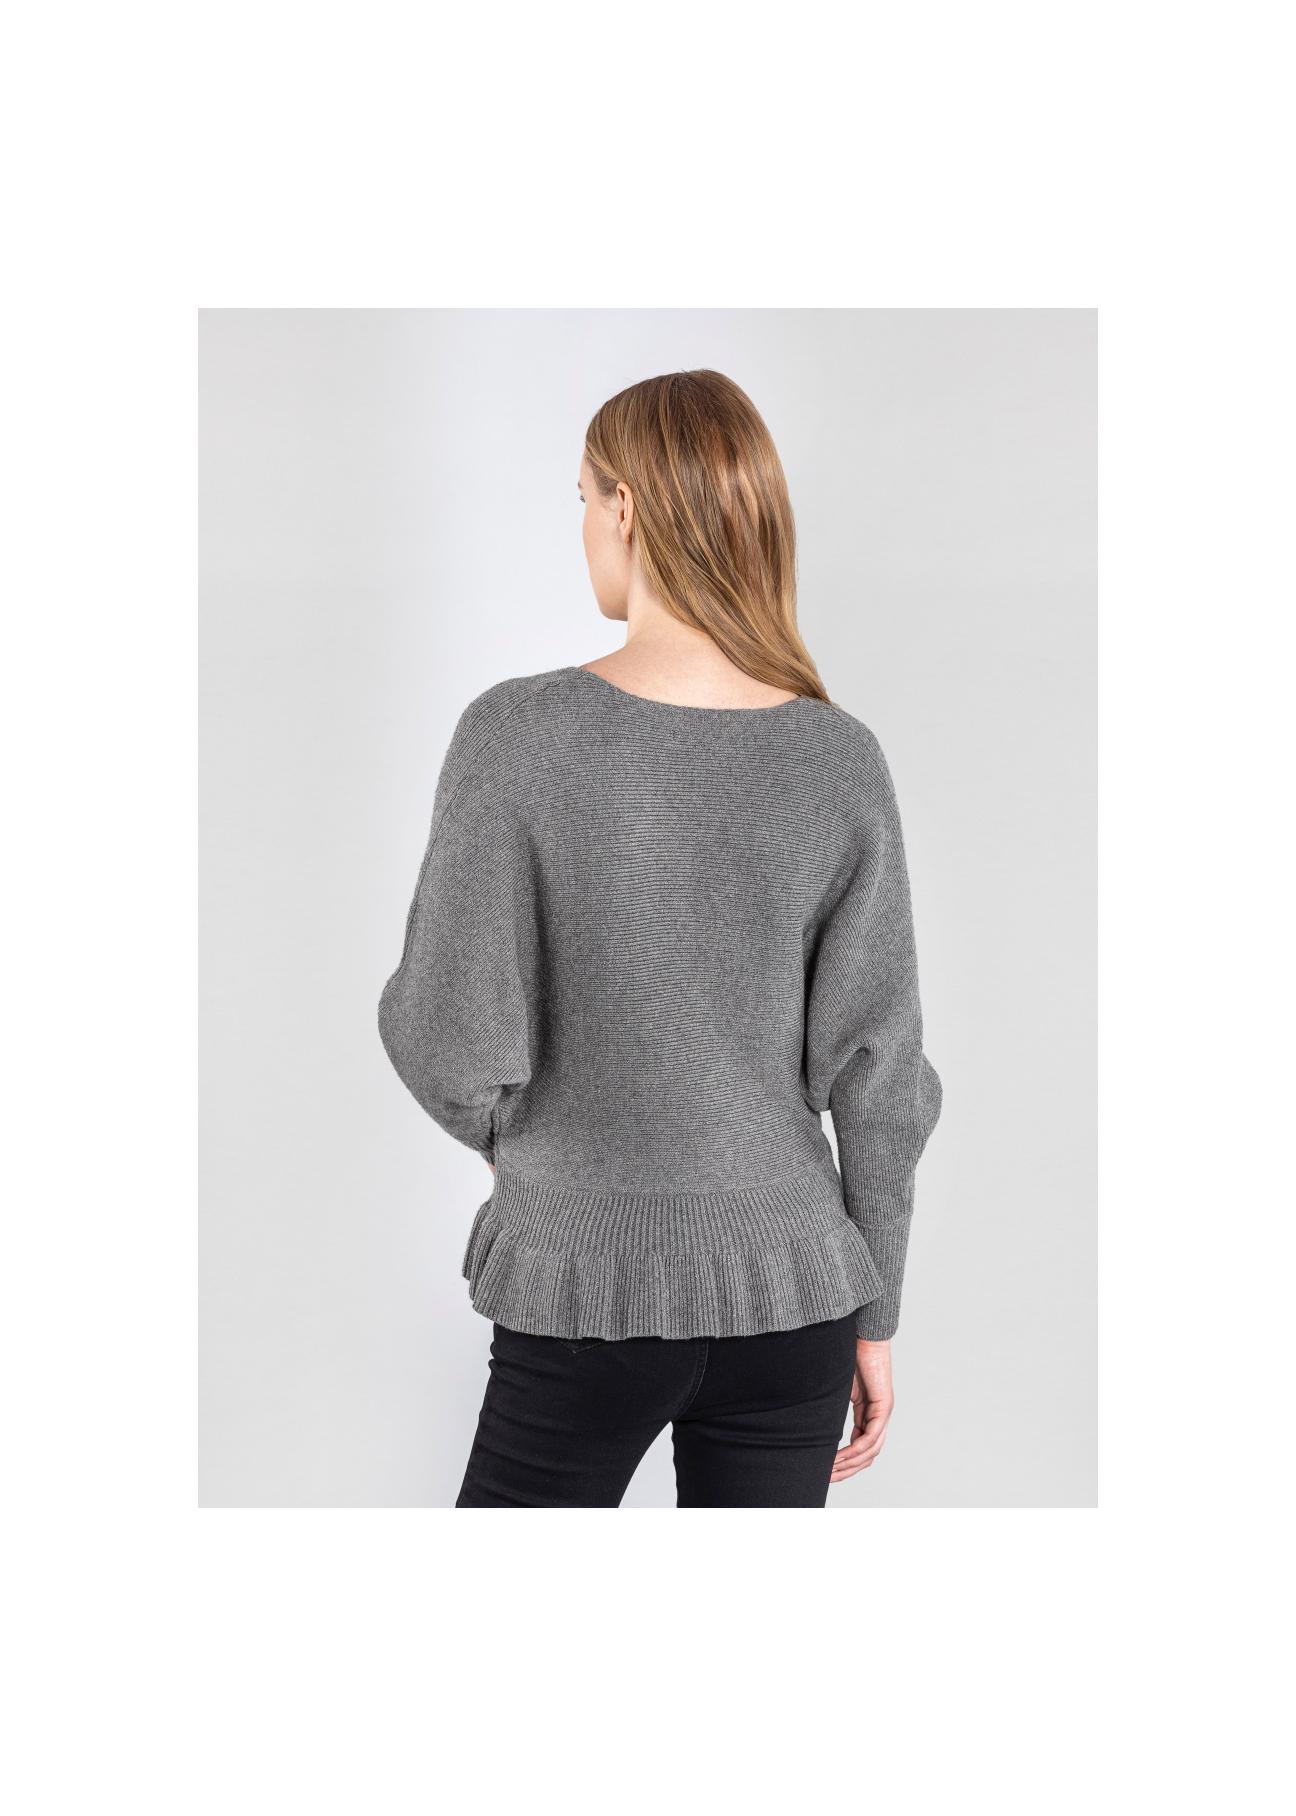 Szary sweter damski z taliowaniem SWEDT-0126-91(Z20)